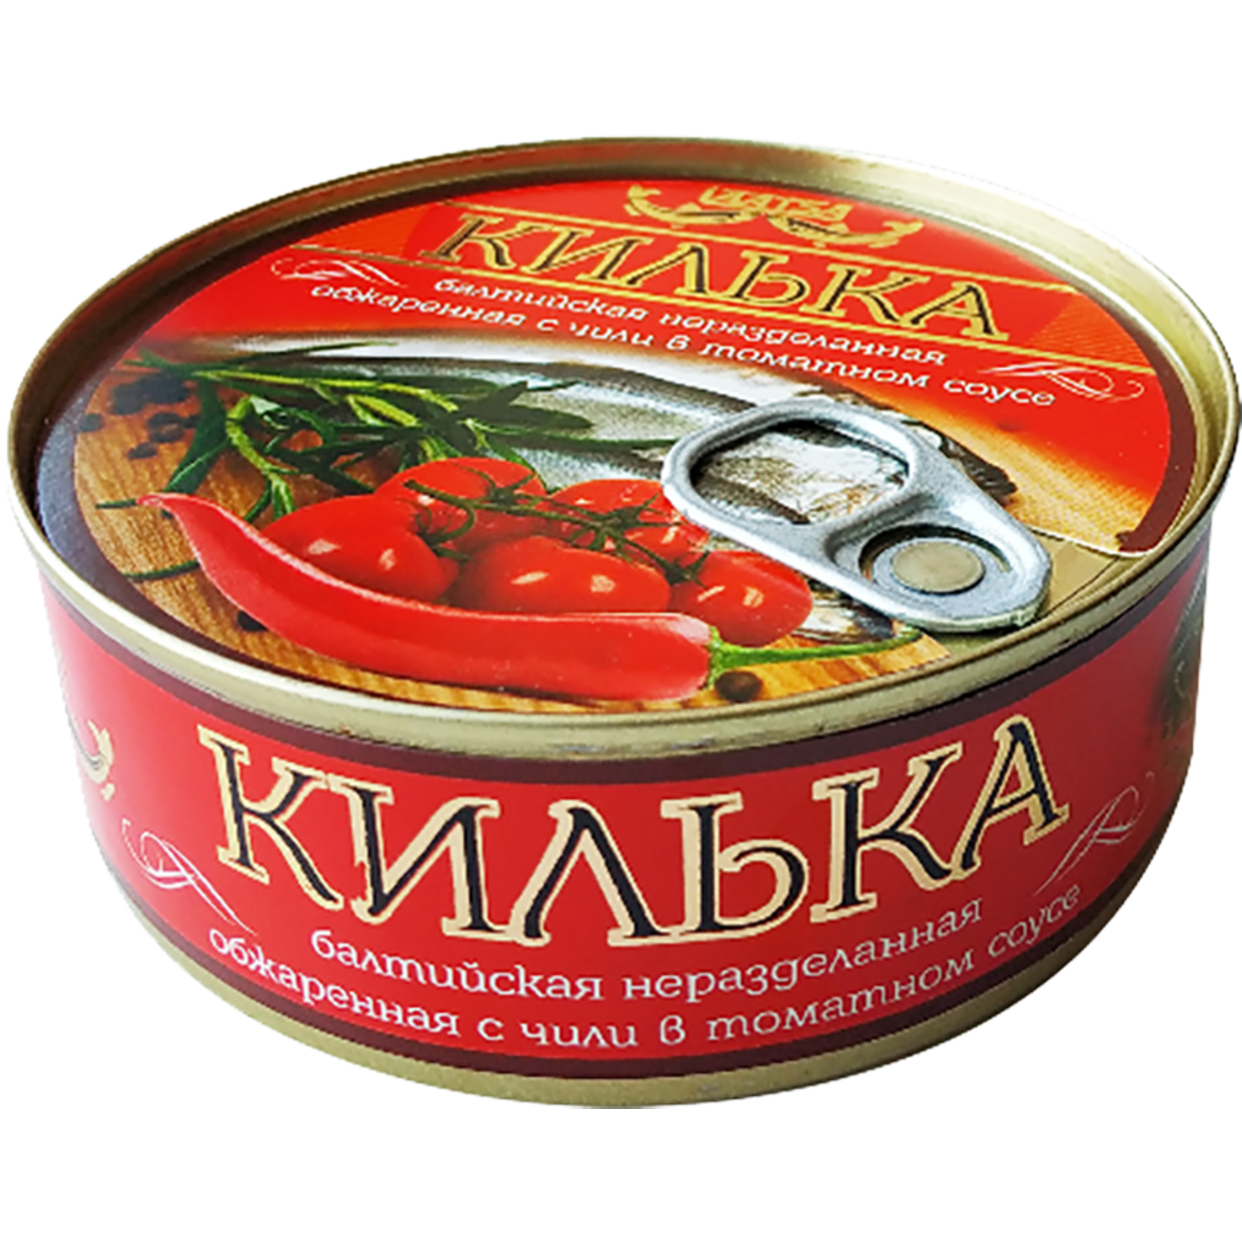 Килька обжареная, с чили, в томатном соусе, Laatsa, 240 г